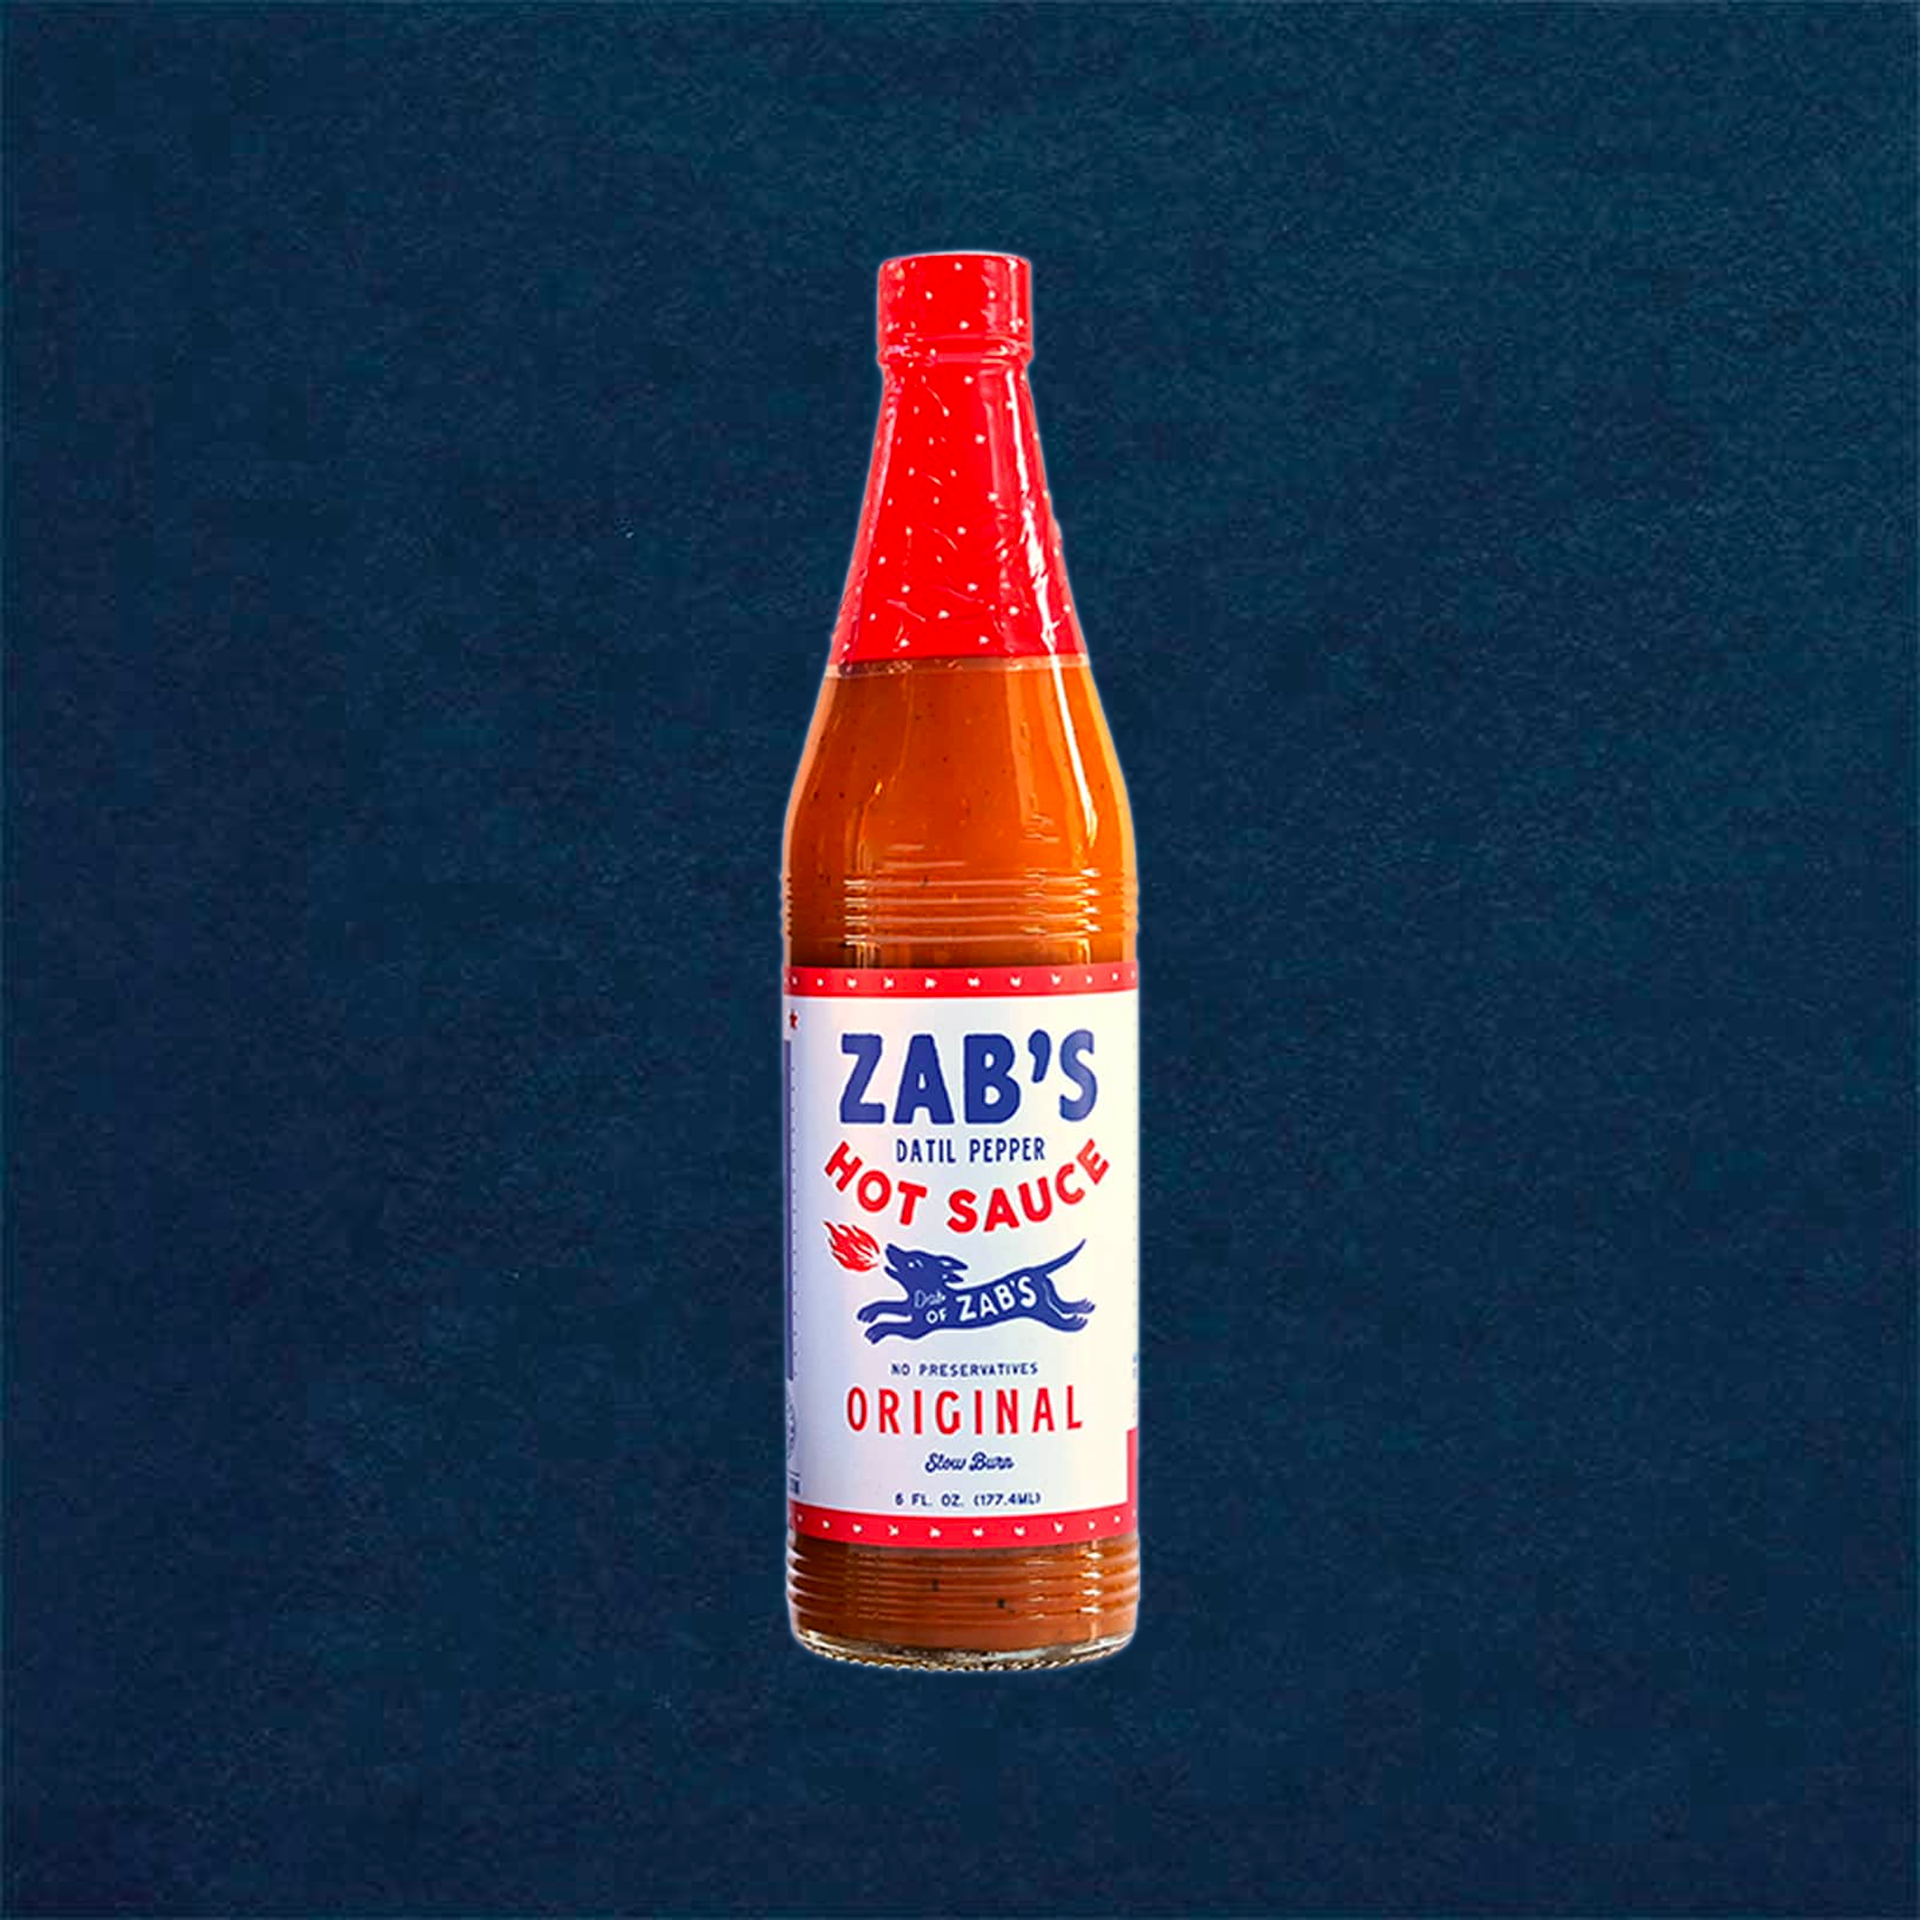 Zab's Original Datil Pepper Hot Sauce